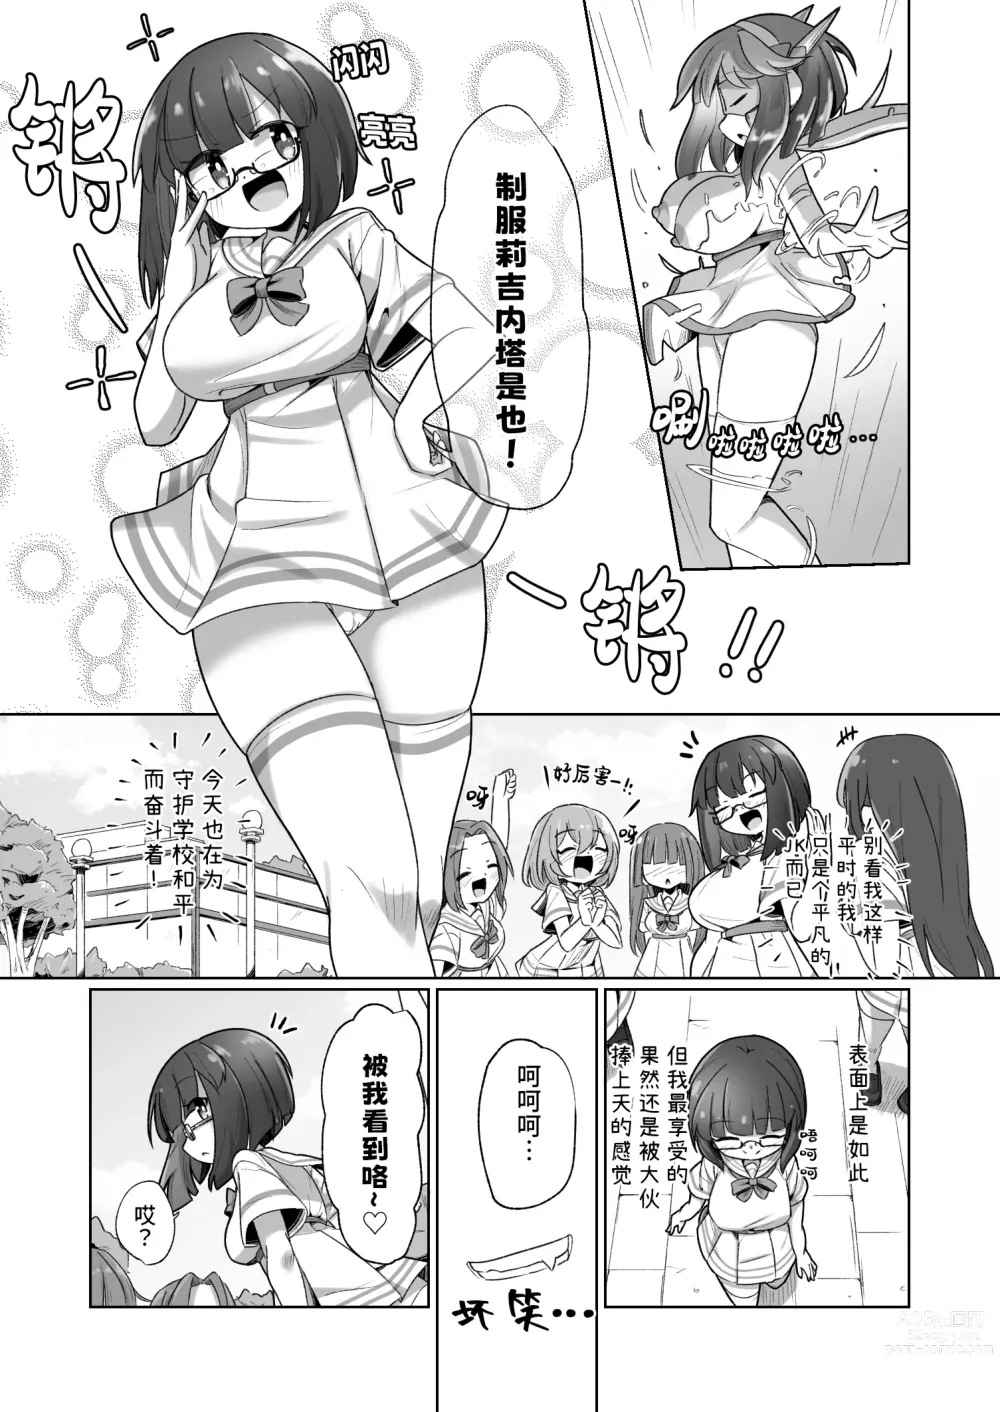 Page 3 of doujinshi 被本该守护的同伴侵犯的这种感觉怎么样啊(笑)??